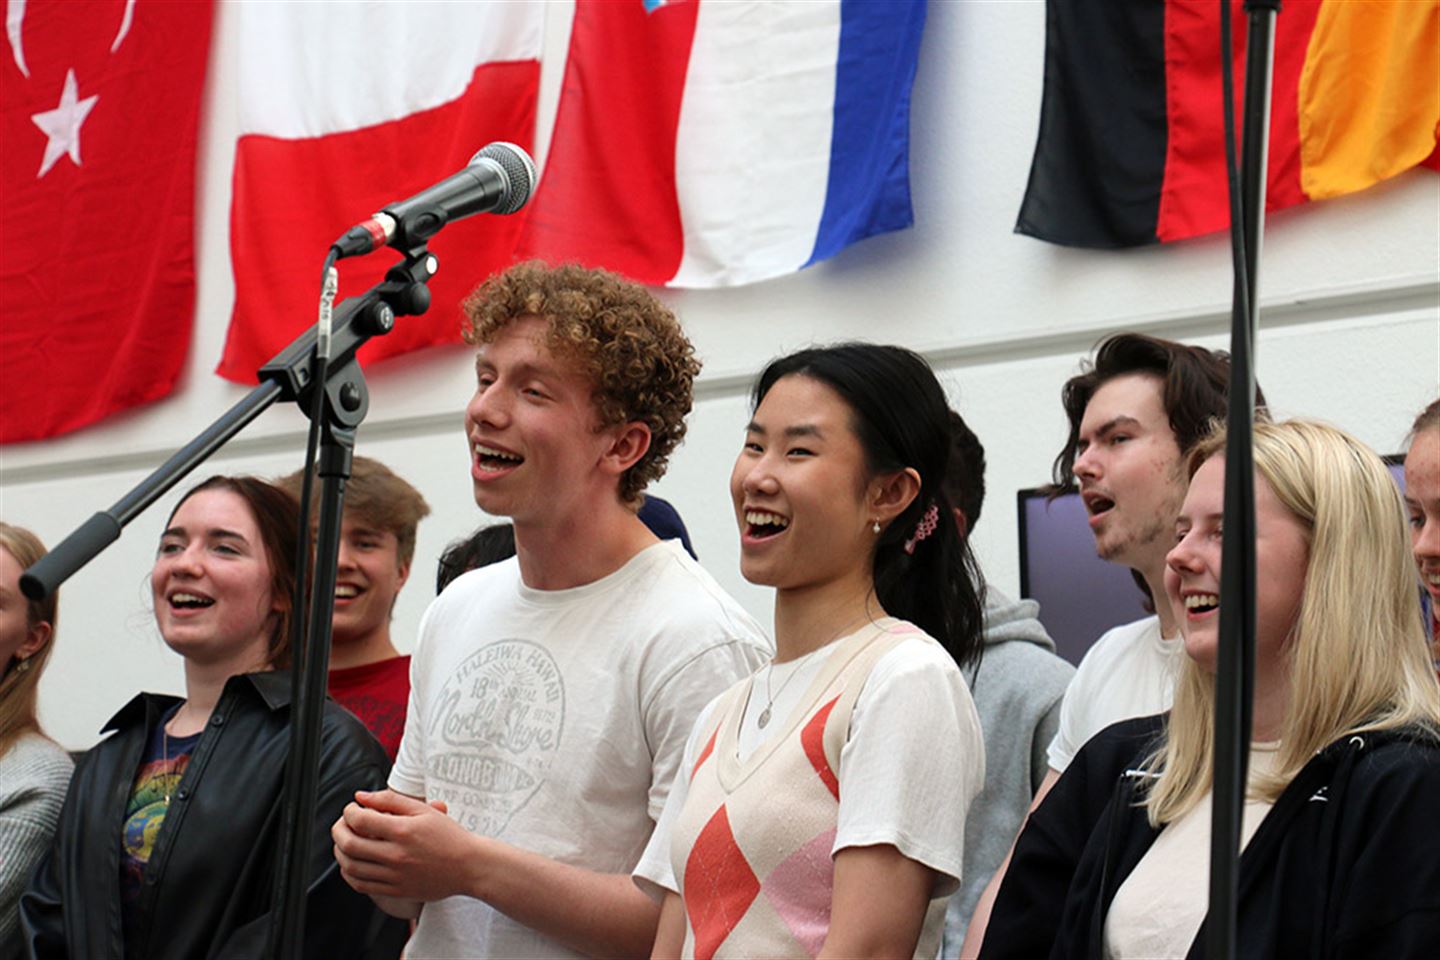 Elevar ved Amalie Skram videregående skole som syng. Foto.
